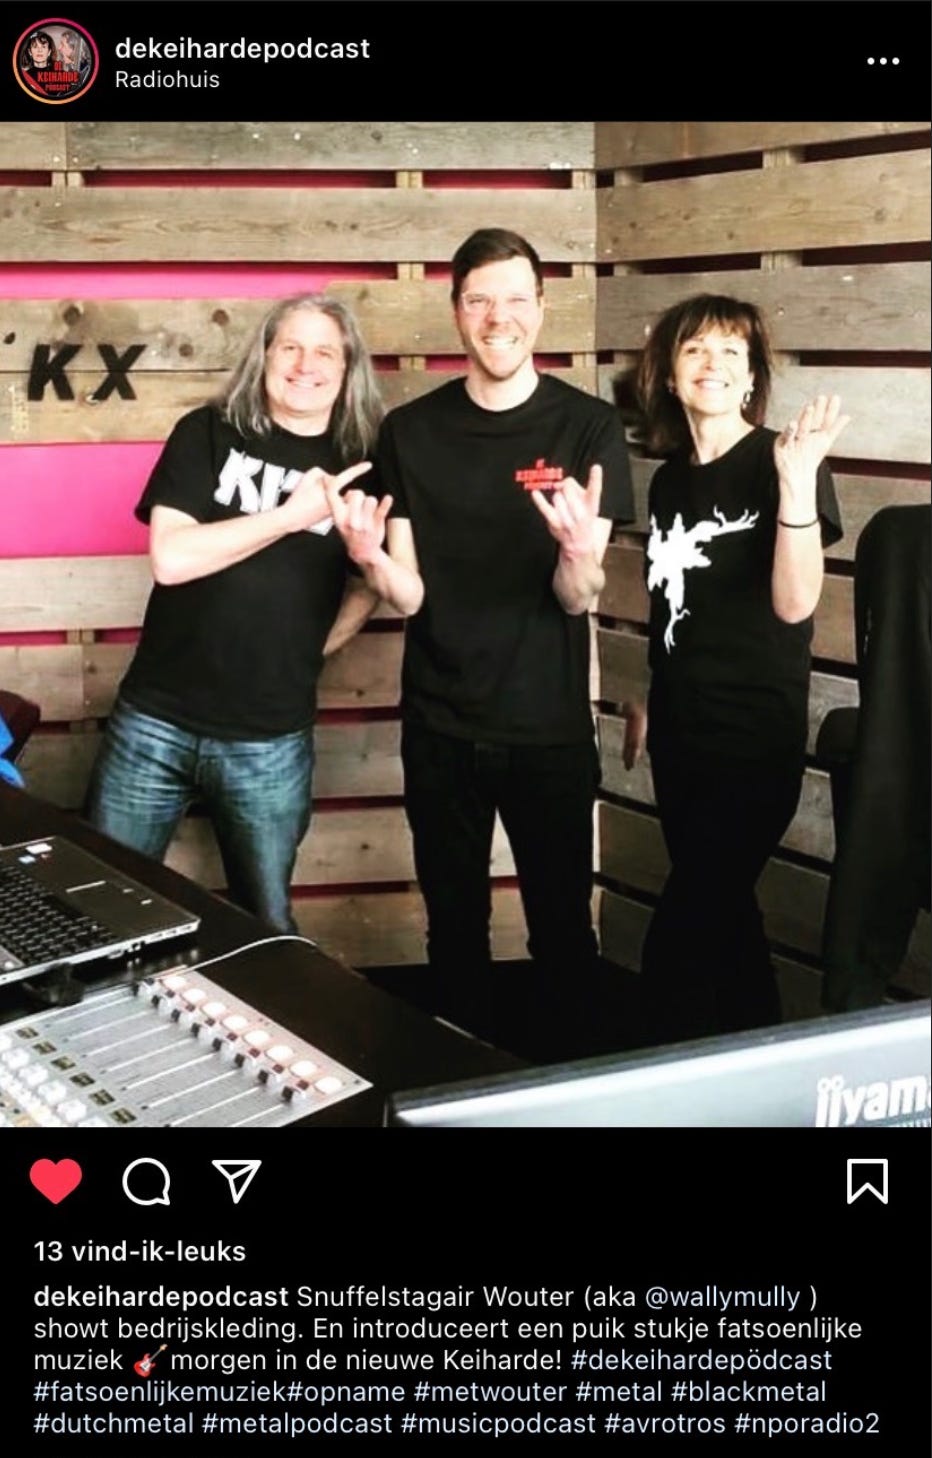 Screenshot van de keiharde podcast instagram. Je ziet een foto waar Wouter tussen de podcast hosts in de studio staat. Ze hebben allemaal zwarte kleren aan en doen het 🤘🏻 symbool met hun handen. Onder de foto staat:  Snuffelstagair Wouter (aka @wallymully ) showt bedrijskleding. En introduceert en puik stukje fatsoenlijke muziek & morgen in de nieuwe Keiharde! #dekeihardepödcast #fatsoenlikemuziek#opname #metwouter #metal #blackmetal #dutchmetal #metalpodcast #musicpodcast #avrotros #nporadio2